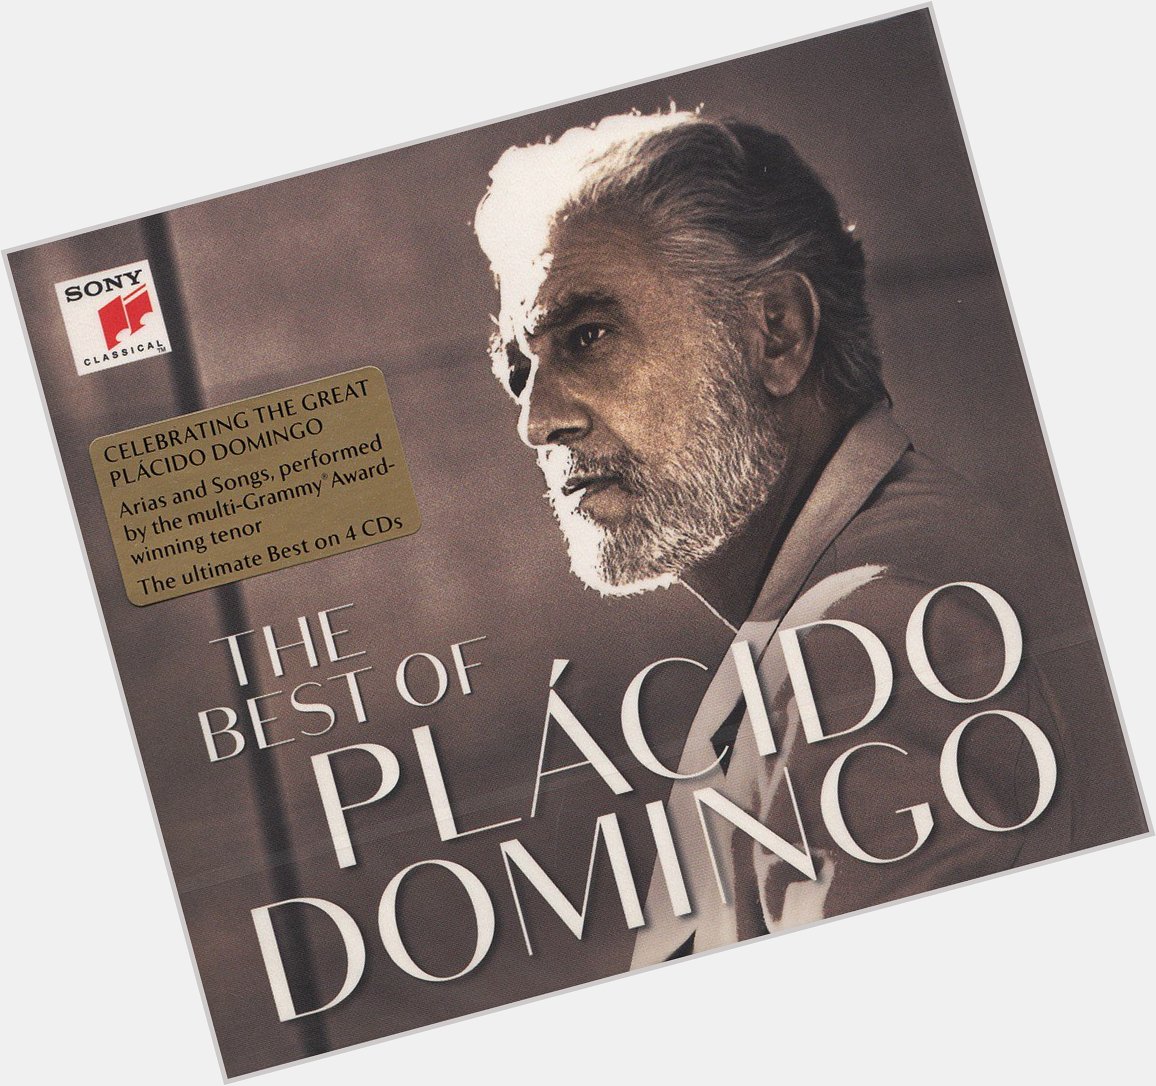 76 today! Happy Birthday to Placido Domingo 